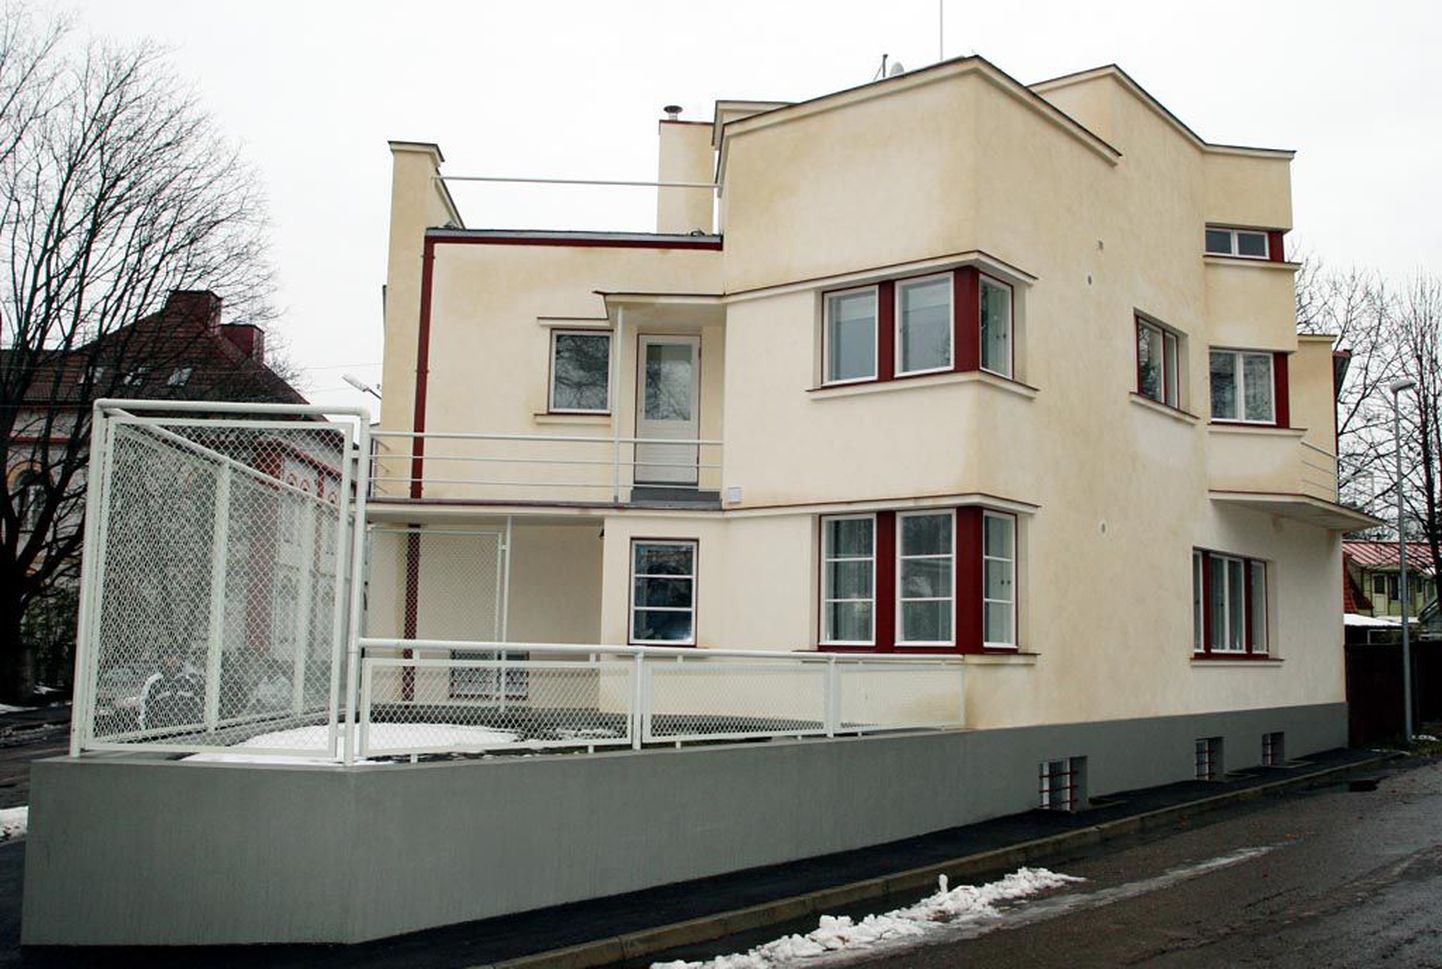 Ettevõtja Toomas Truuvertile on arhitektuuriasjatundjad jaganud ohtralt kiitust Pärnu endise linnaarhitekti Olev Siinmaa maja detailirohke ja algupärase renoveerimise eest. Kinnisvaramulli lõhkemise järel on maja saatus umbmäärane.